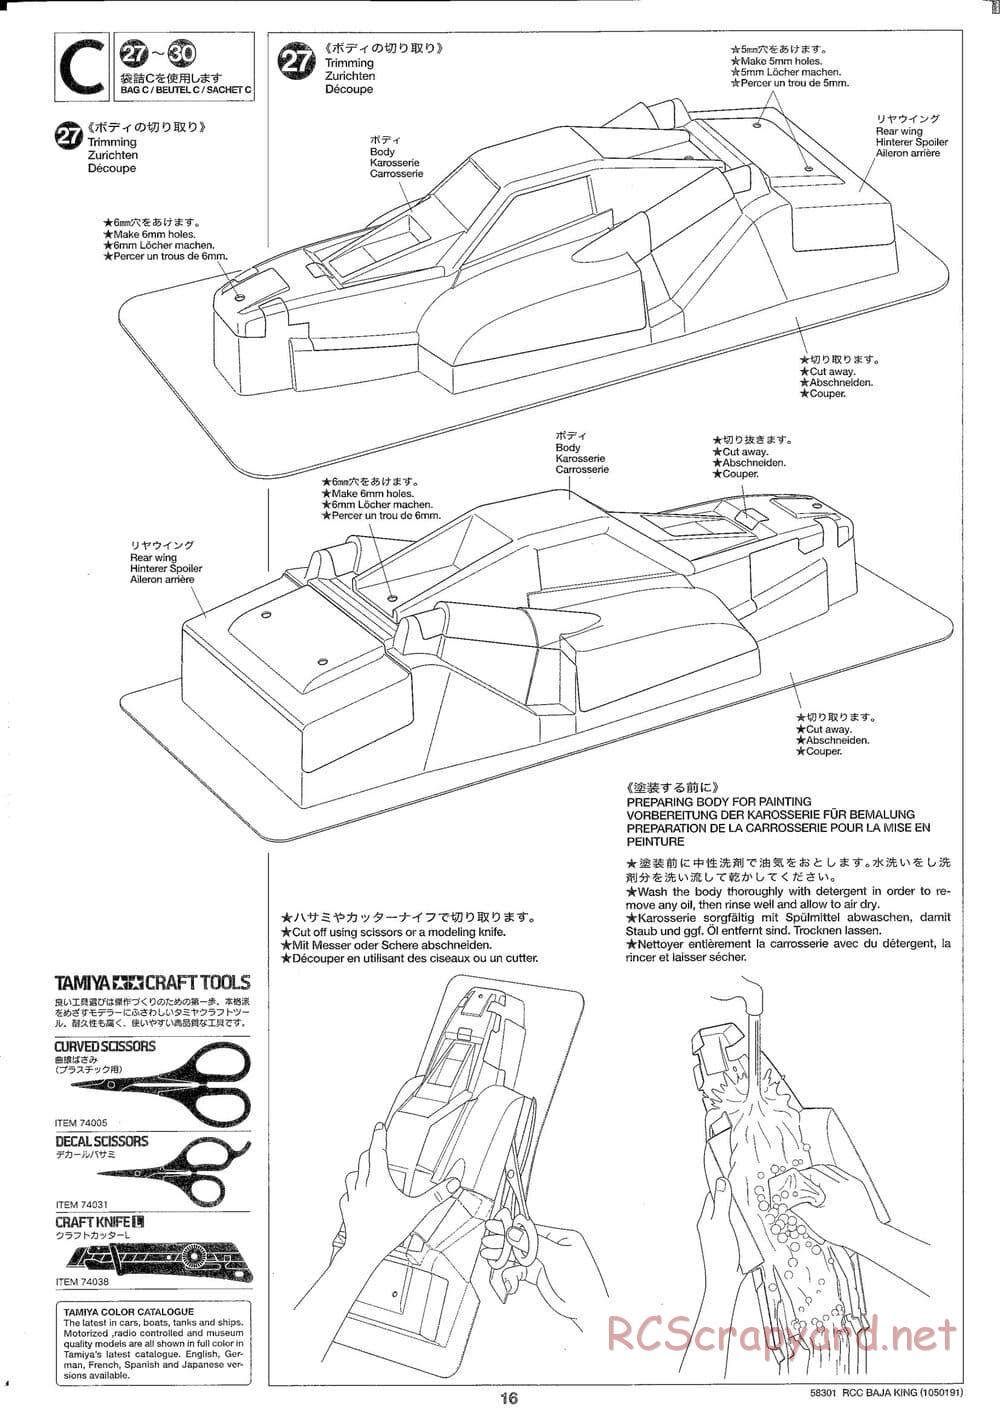 Tamiya - Baja King - TL-01B Chassis - Manual - Page 16